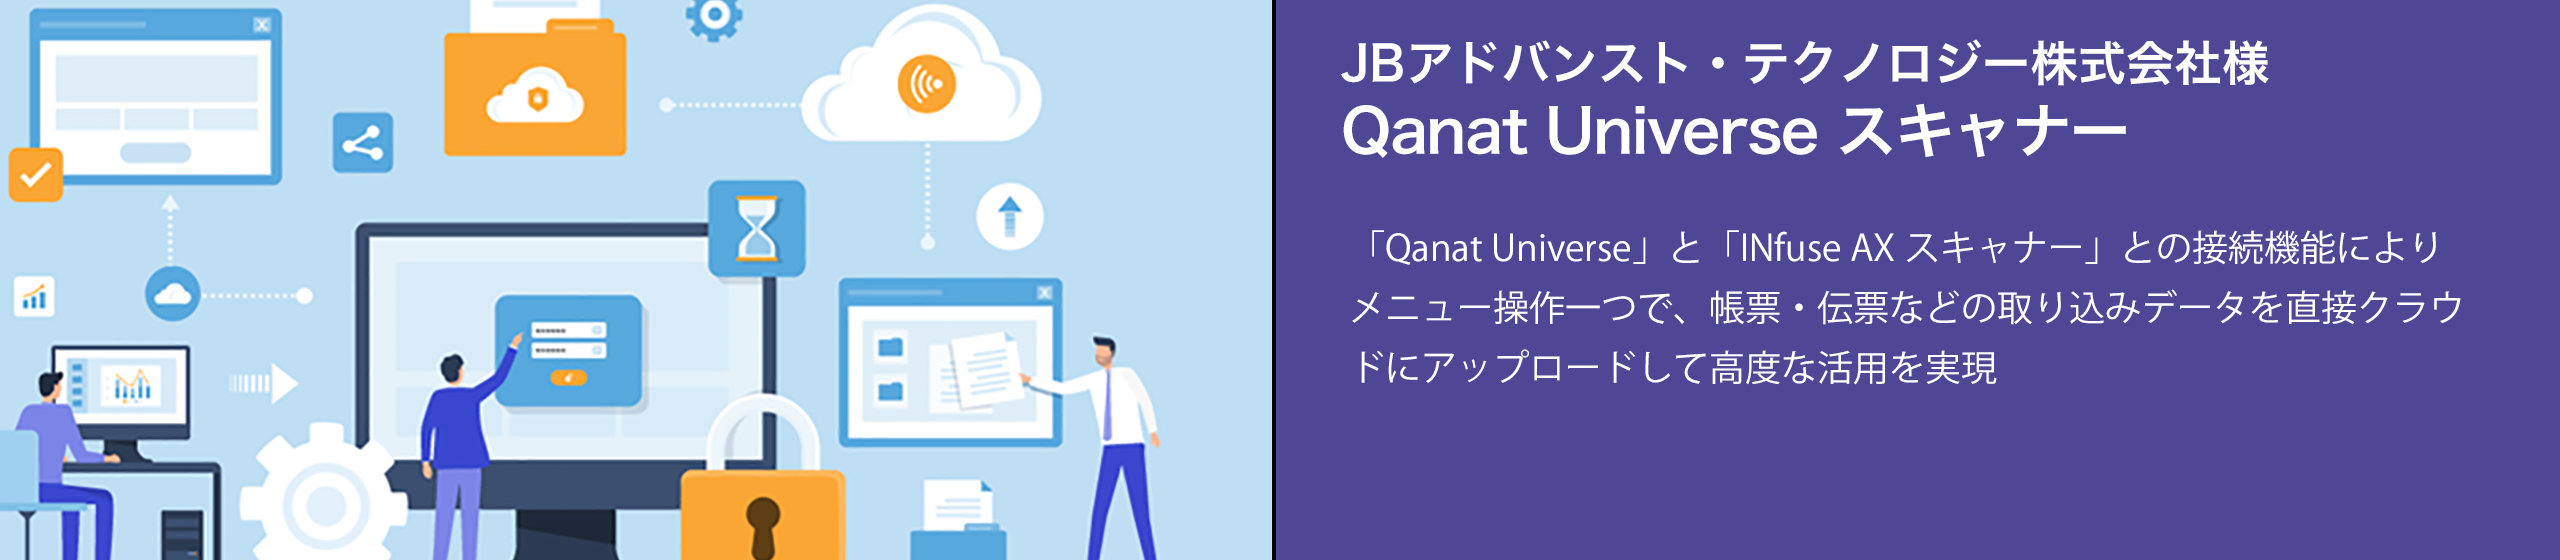 ＪＢアドバンスト・テクノロジーとコダック アラリス ジャパンは「Qanat Universe スキャナー」の提供を開始 